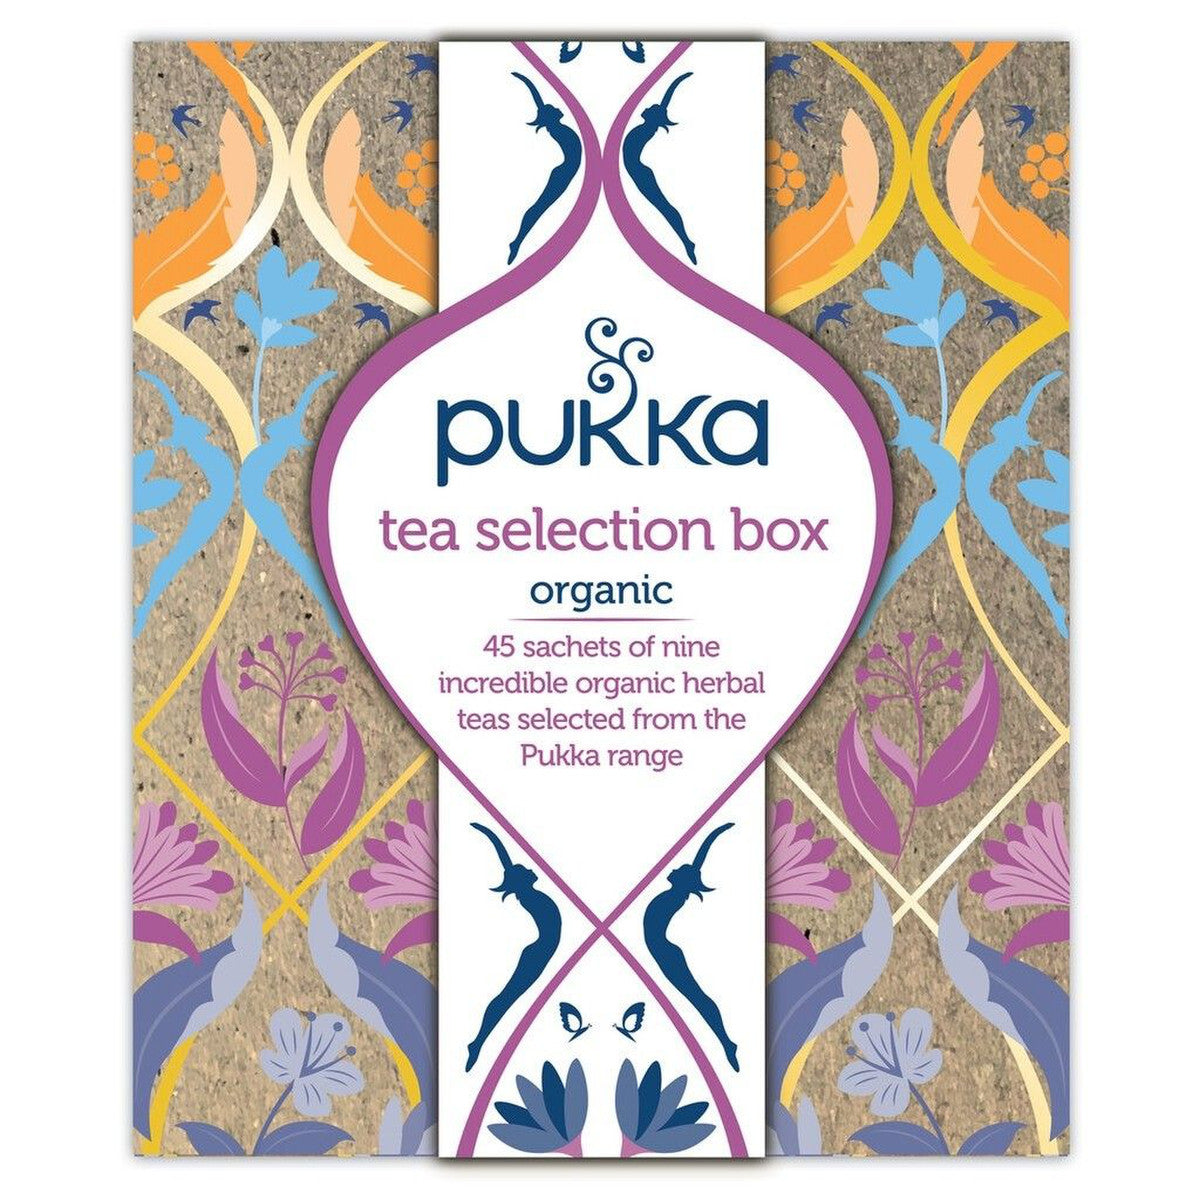 Pukka Tea Selection Box (45 sachets)